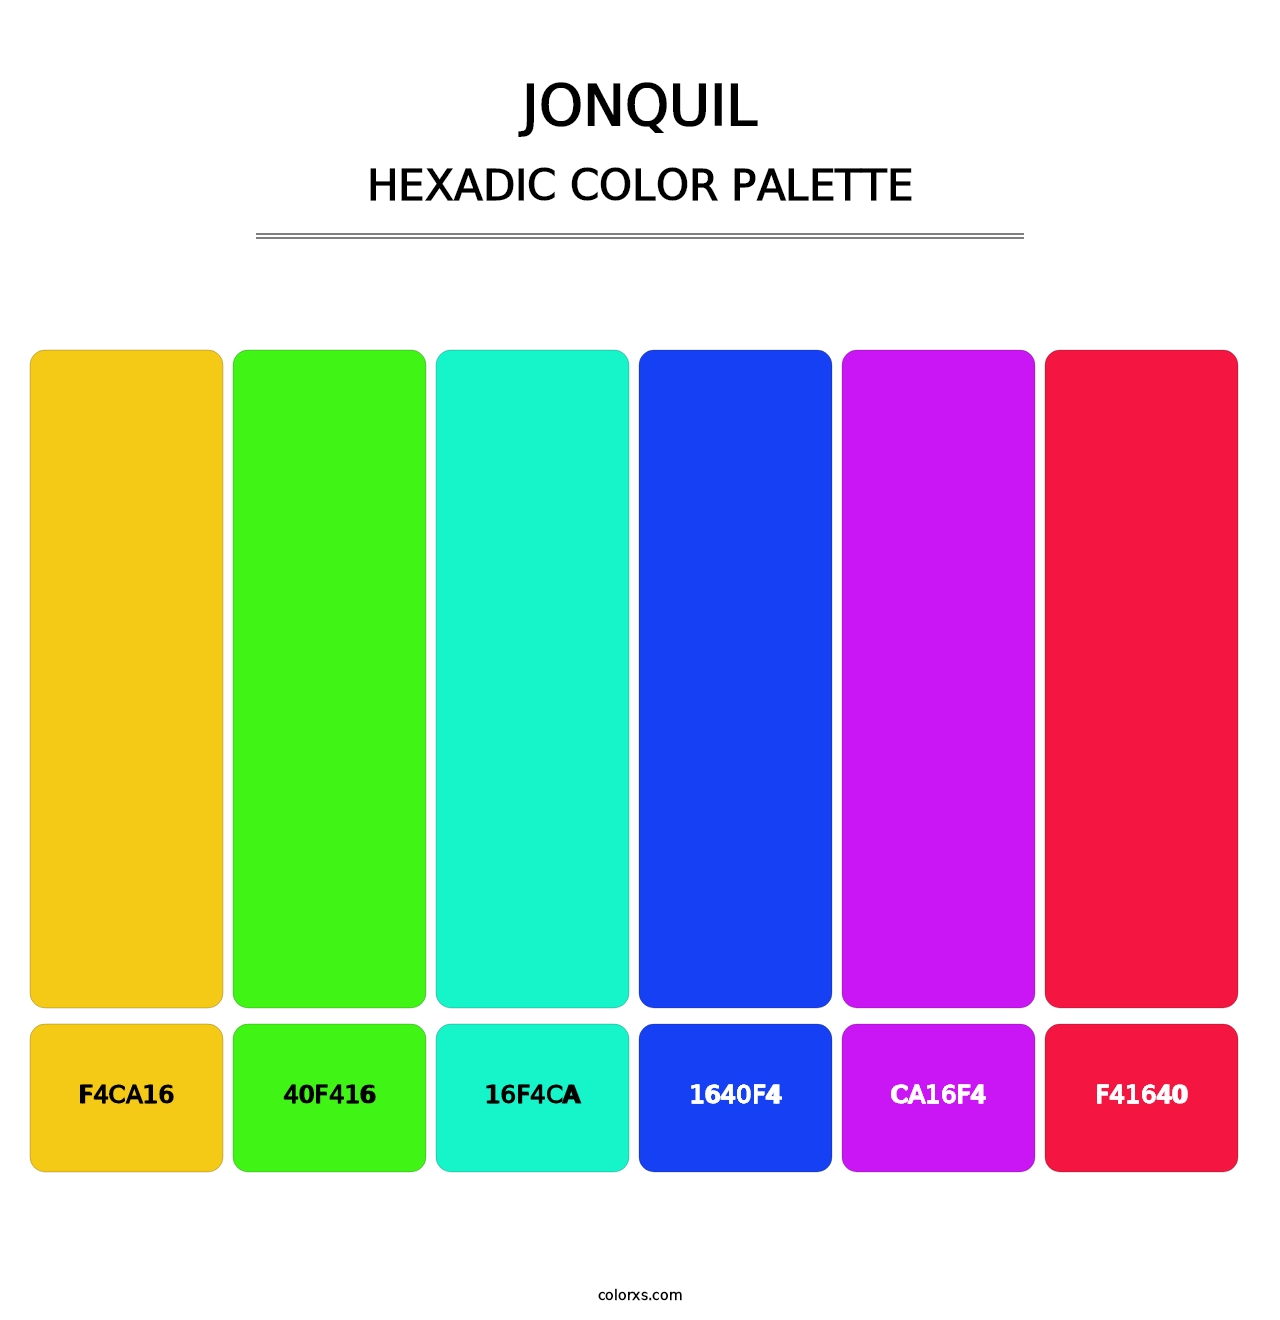 Jonquil - Hexadic Color Palette